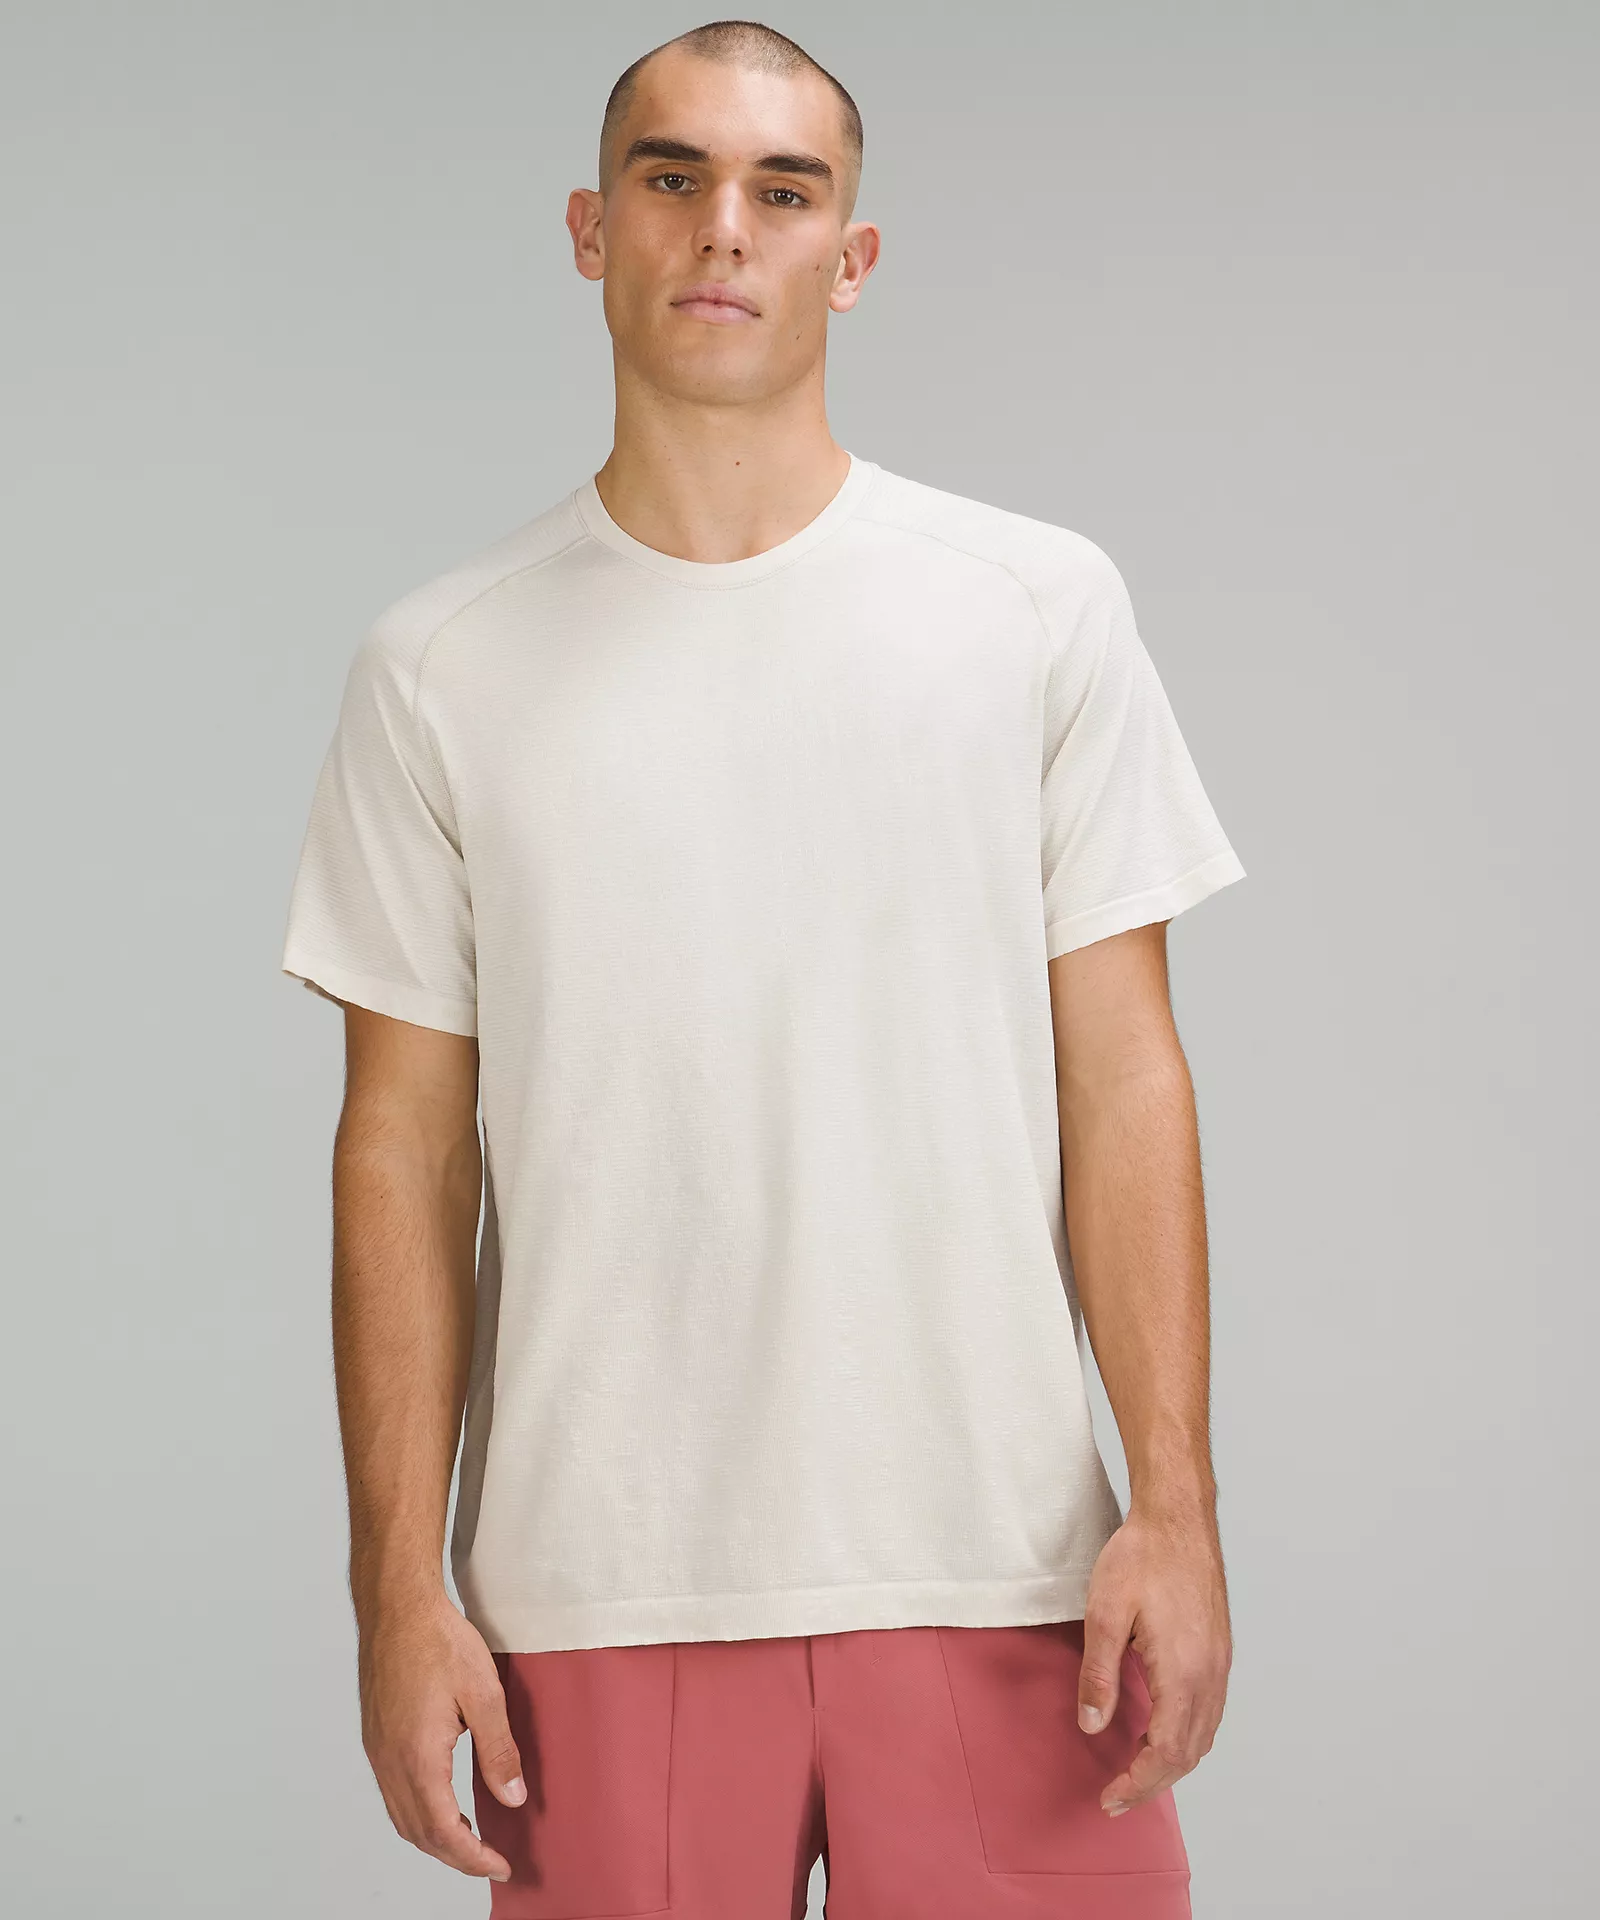 shop.lululemon.com | Metal Vent Tech Short Sleeve Shirt 2.0